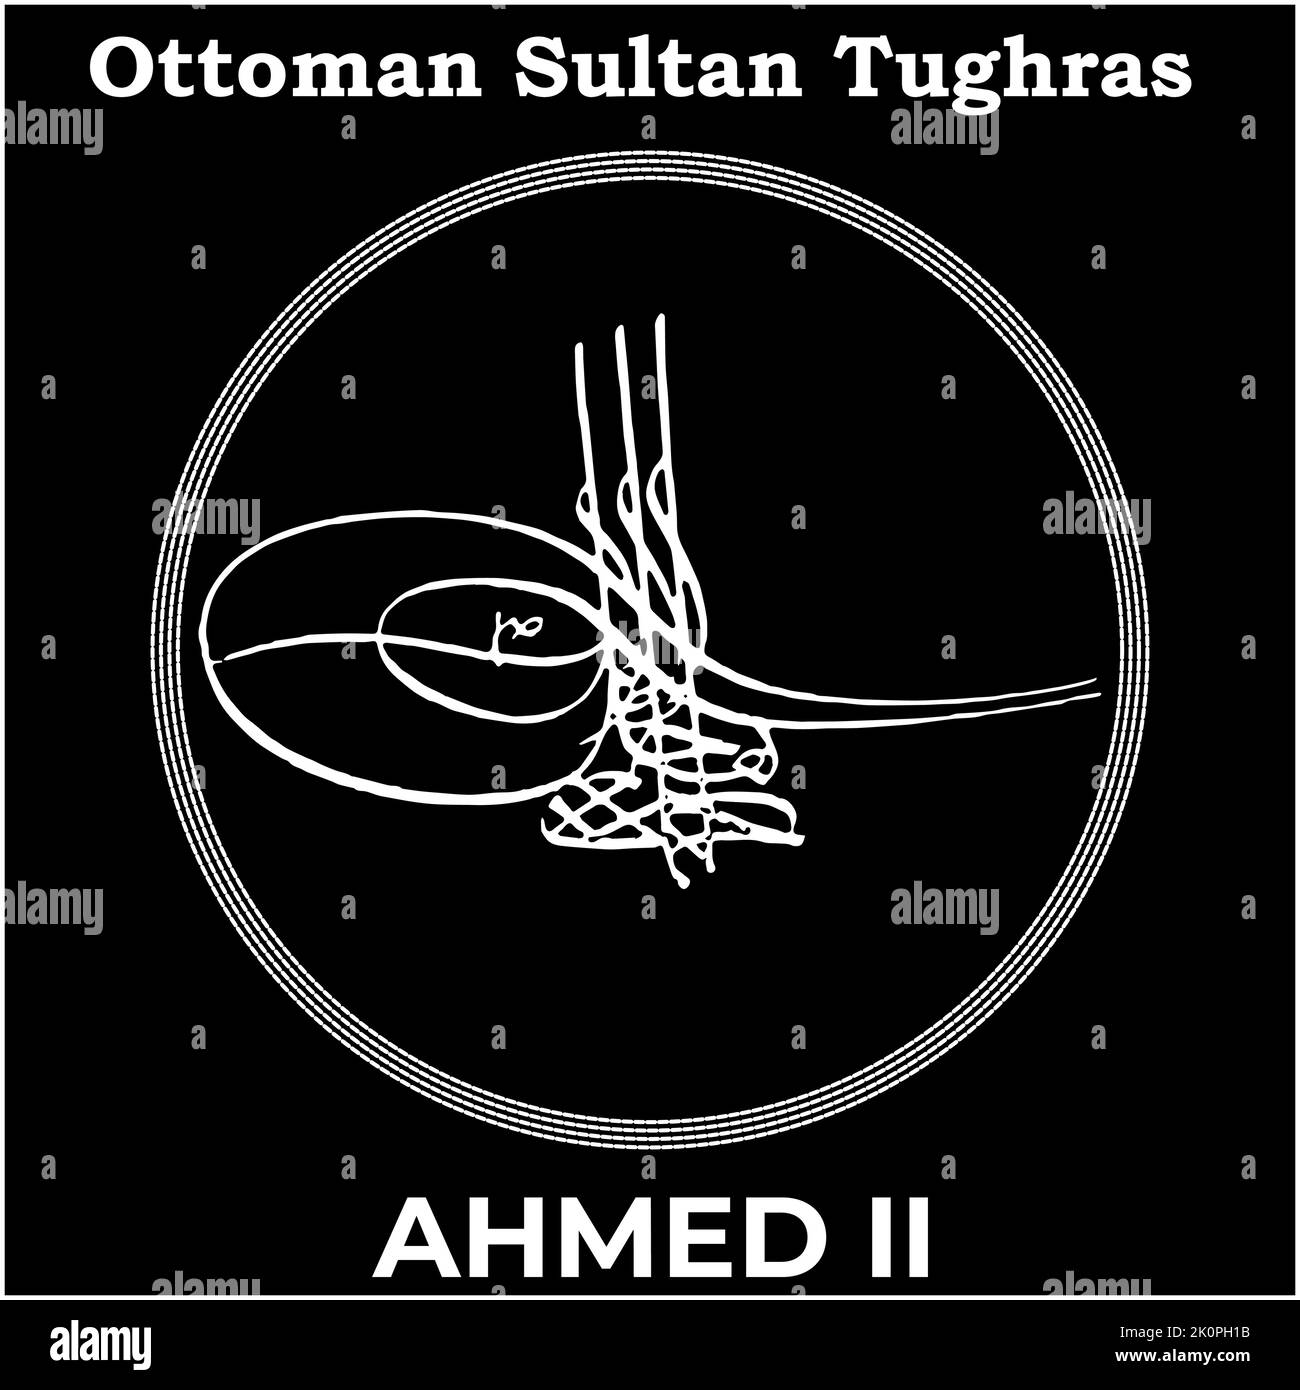 Immagine vettoriale con firma Tughra del ventunesimo sultano Ottomano Ahmed II, Tughra di Ahmed II con sfondo nero. Illustrazione Vettoriale